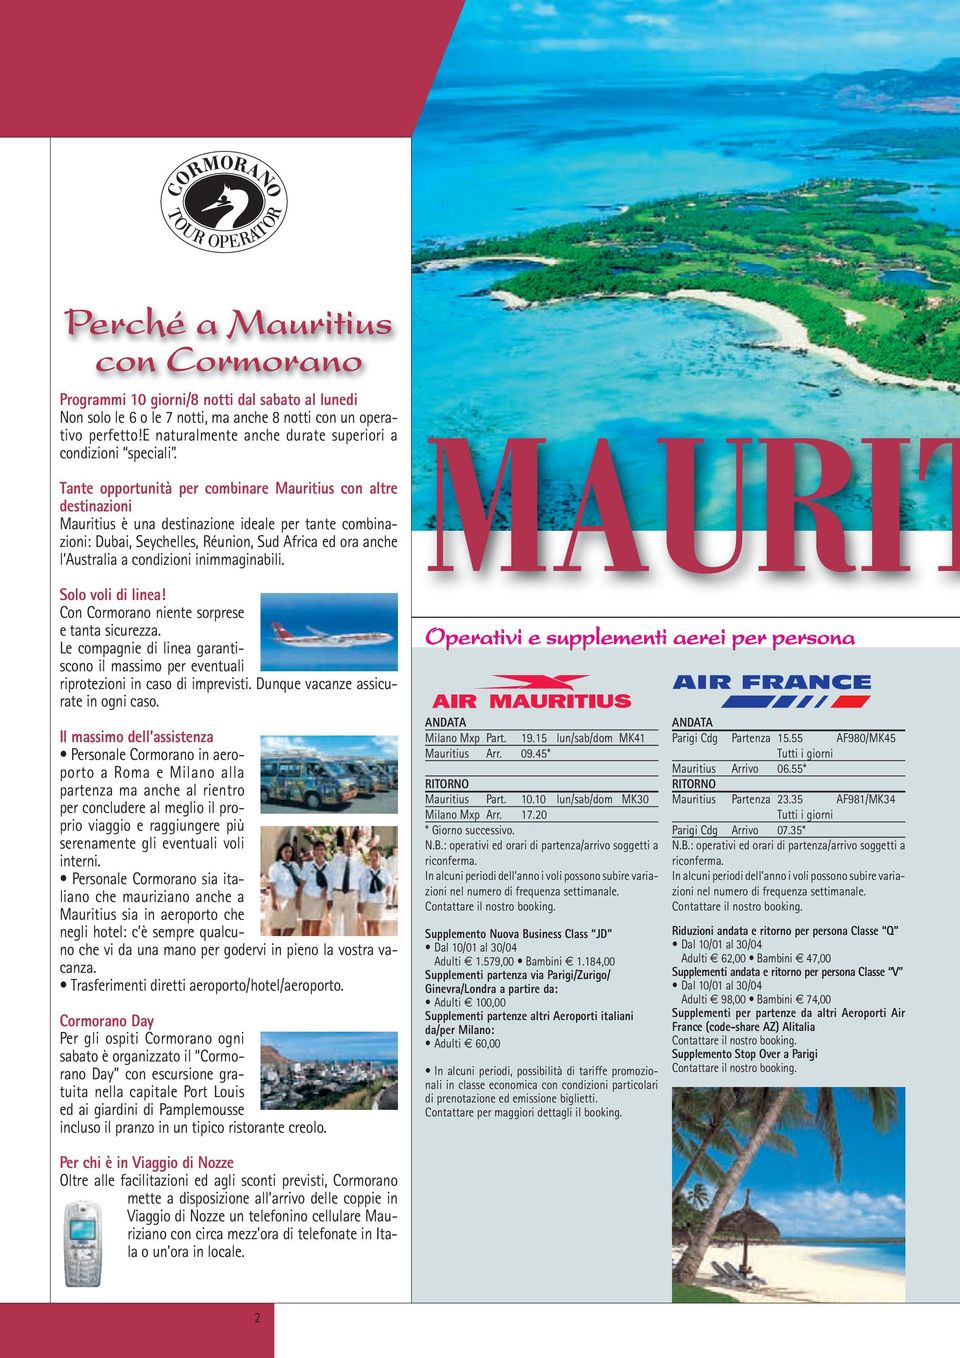 Tante opportunità per combinare Mauritius con altre destinazioni Mauritius è una destinazione ideale per tante combinazioni: Dubai, Seychelles, Réunion, Sud Africa ed ora anche l Australia a